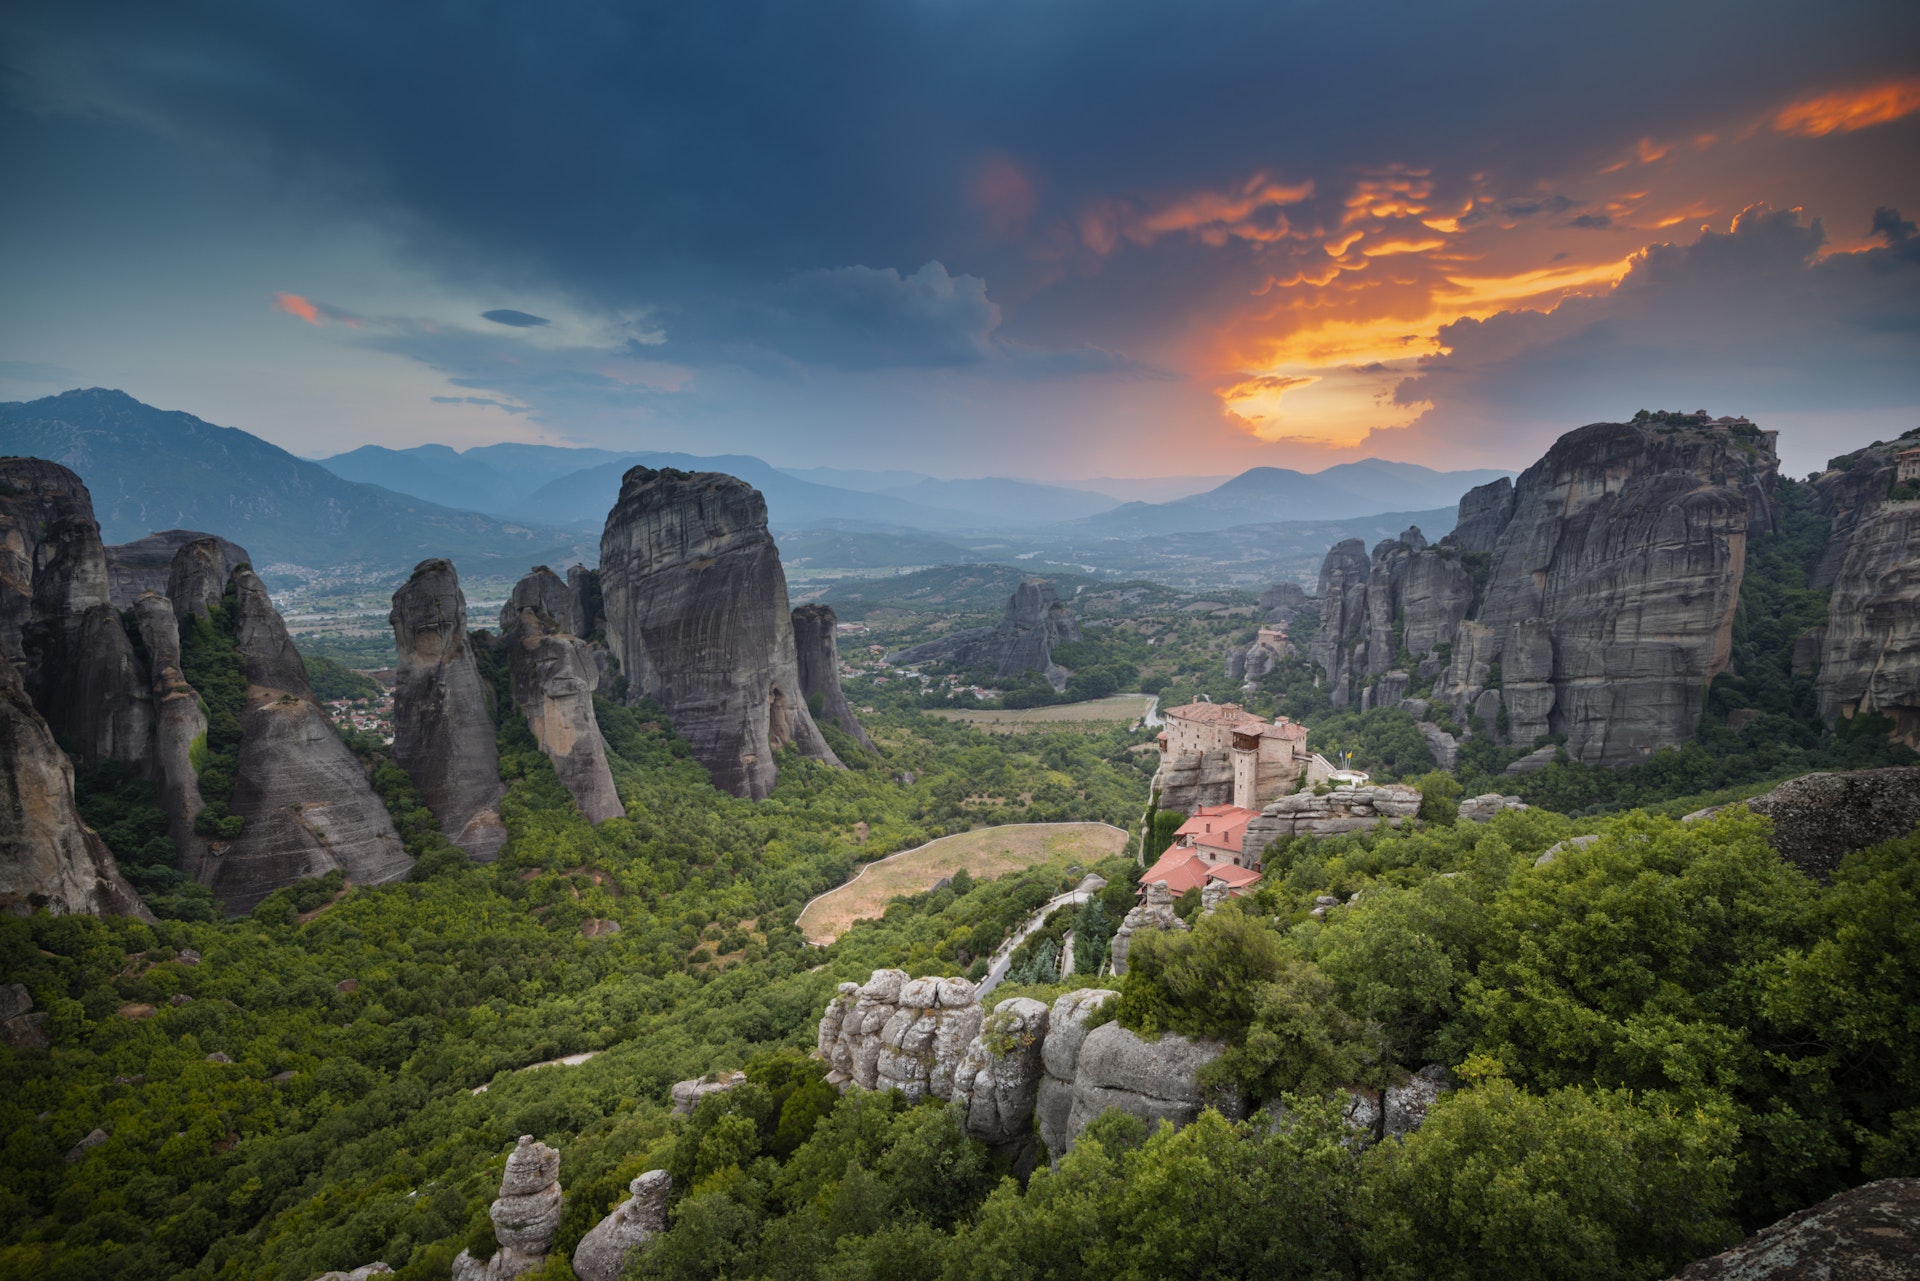  Coneix Grècia amb aquests 12 llocs imprescindibles per visitar